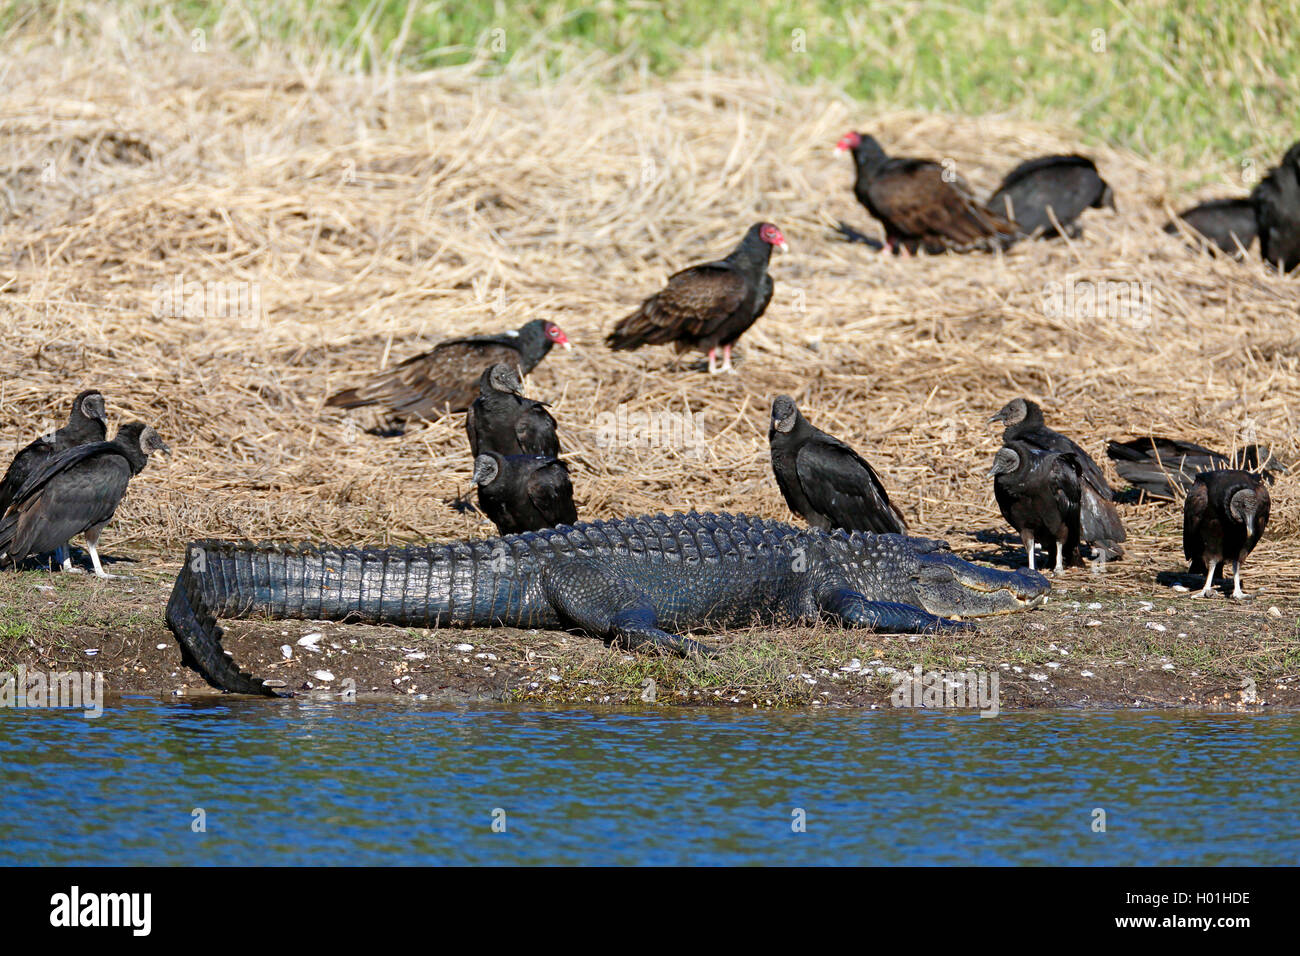 American alligator (Alligator mississippiensis), liegt am Flußufer, von Schwarz und Truthahngeier, USA, Florida umgeben Stockfoto